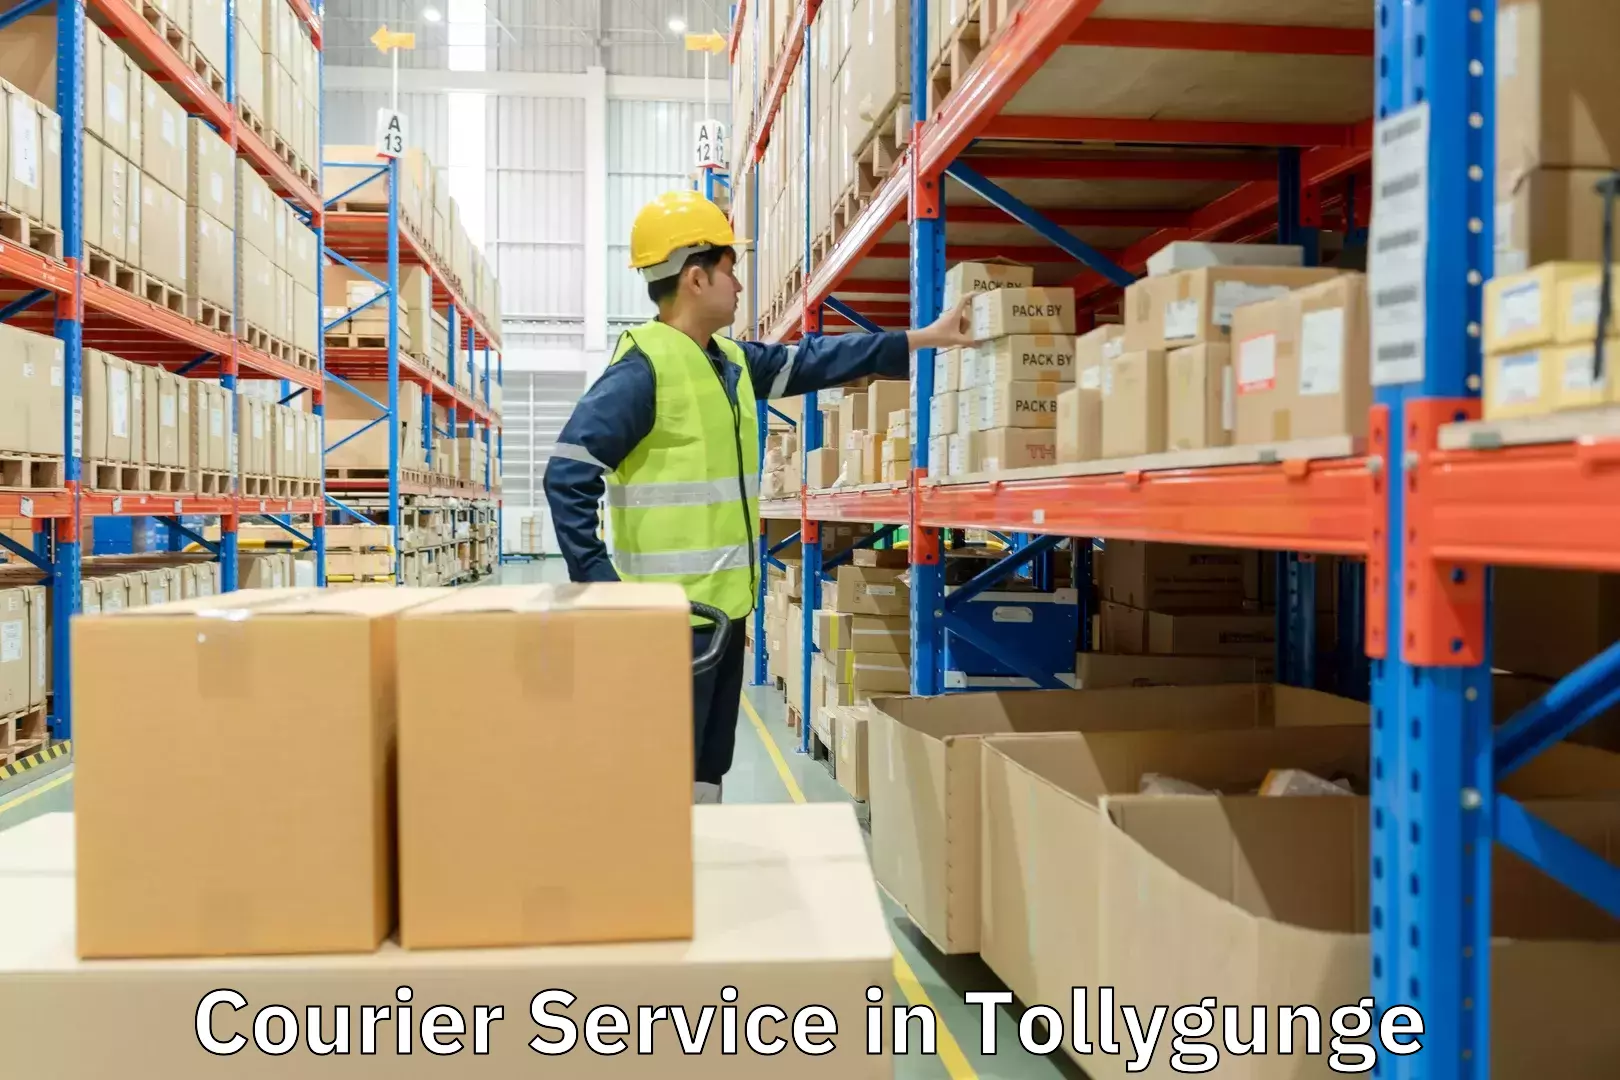 Bulk courier orders in Tollygunge